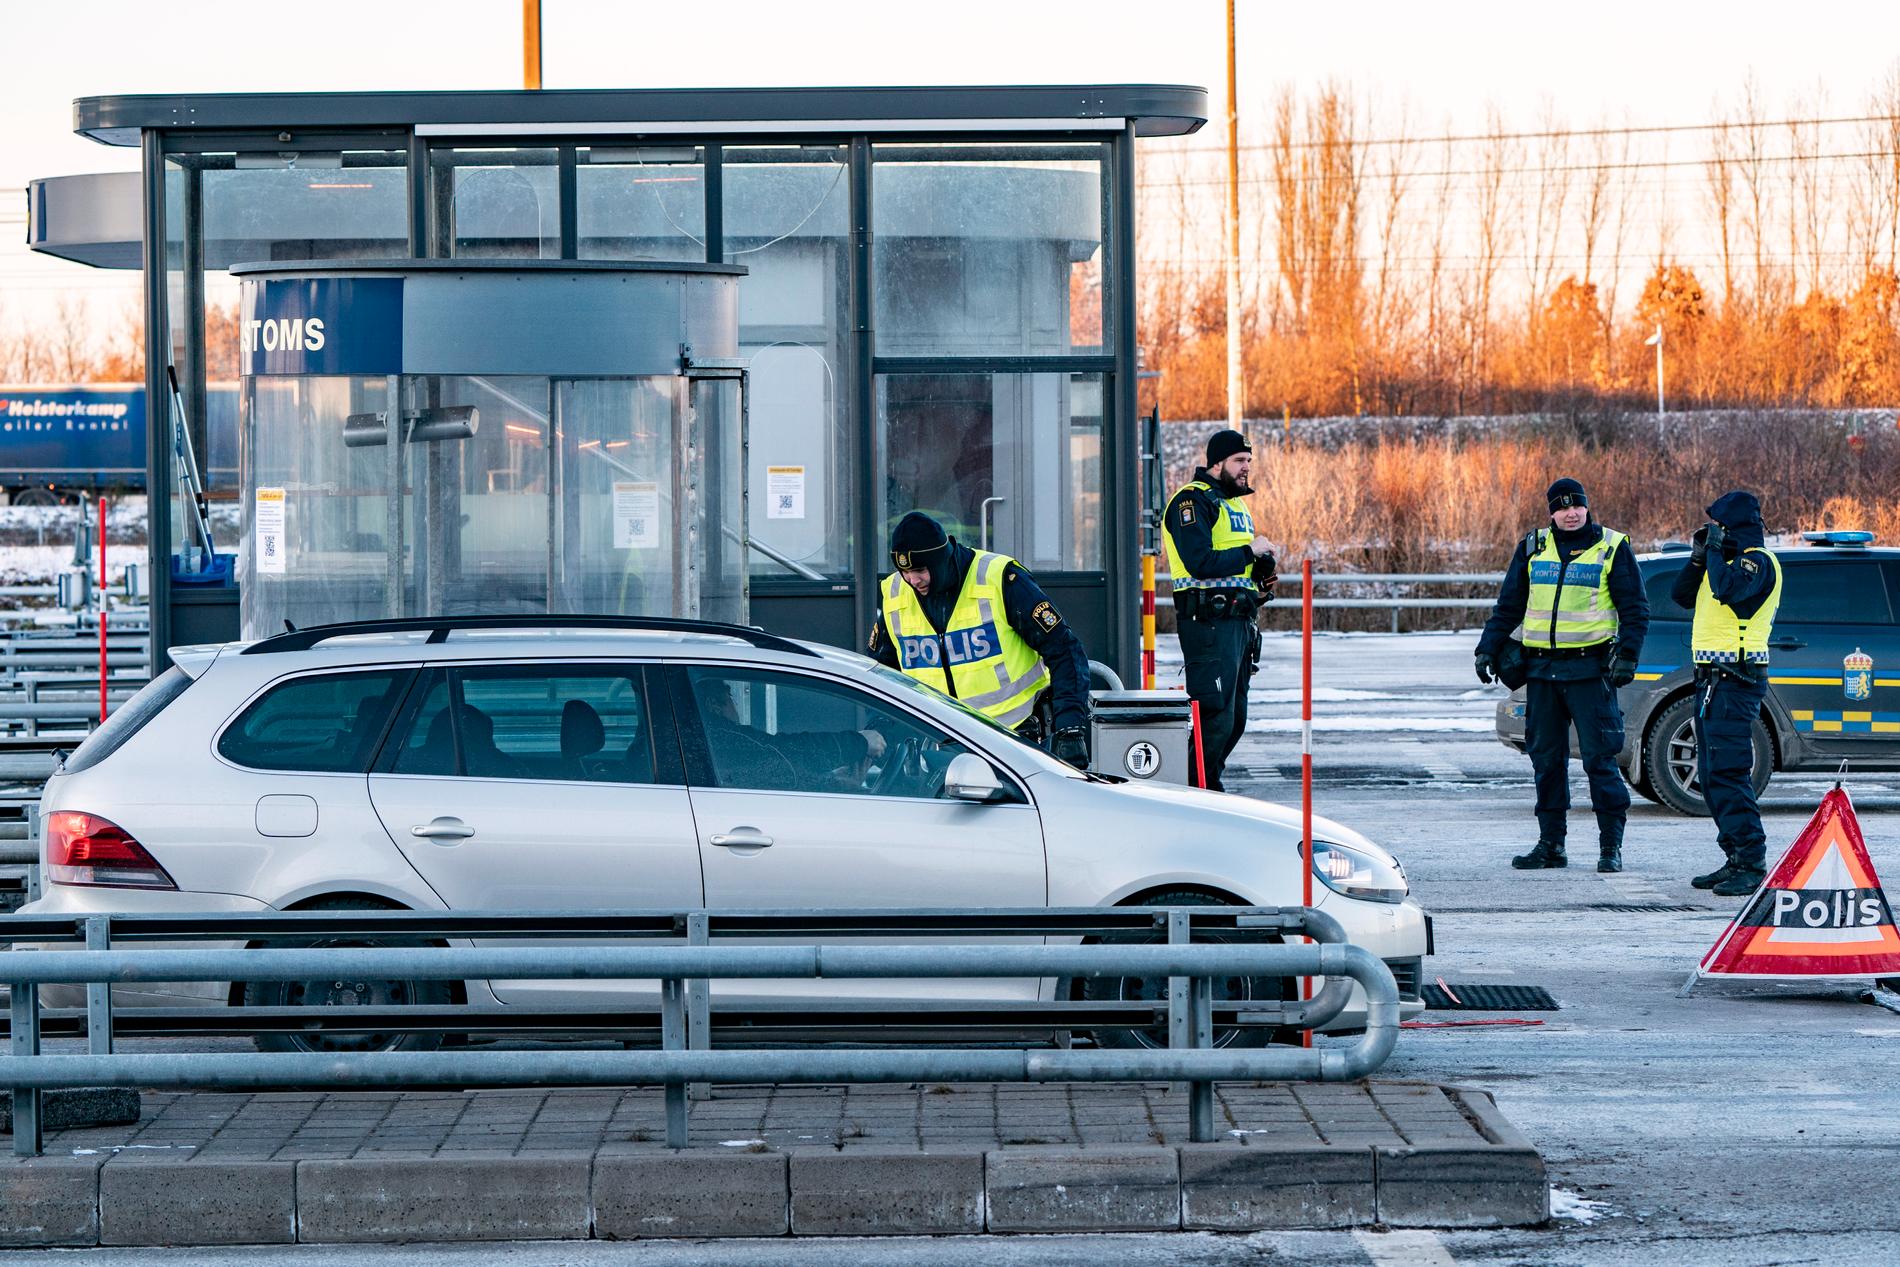 Polis och passkontrollanter på plats vid gränskontrollen efter betalstationen på Lernacken på den svenska sidan av Öresundsbron. Arkivbild.